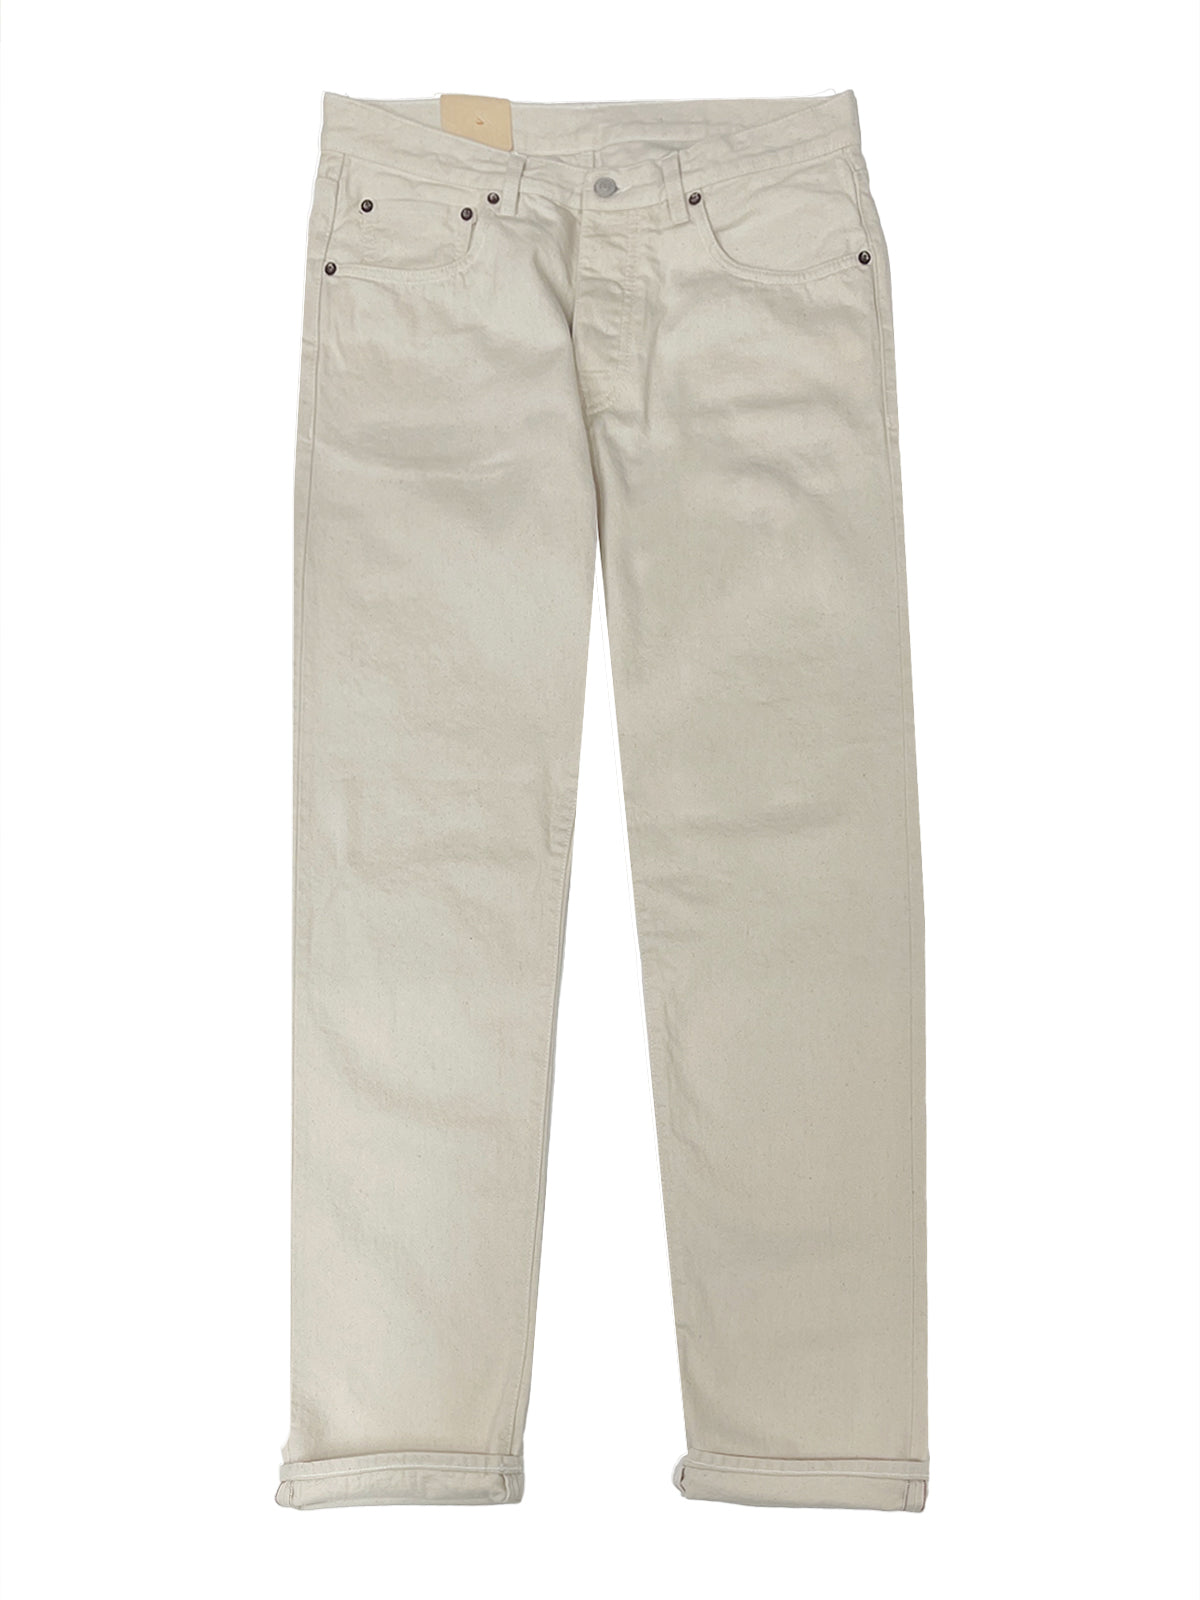 Fortela John Off White Denim Five Pocket Jeans